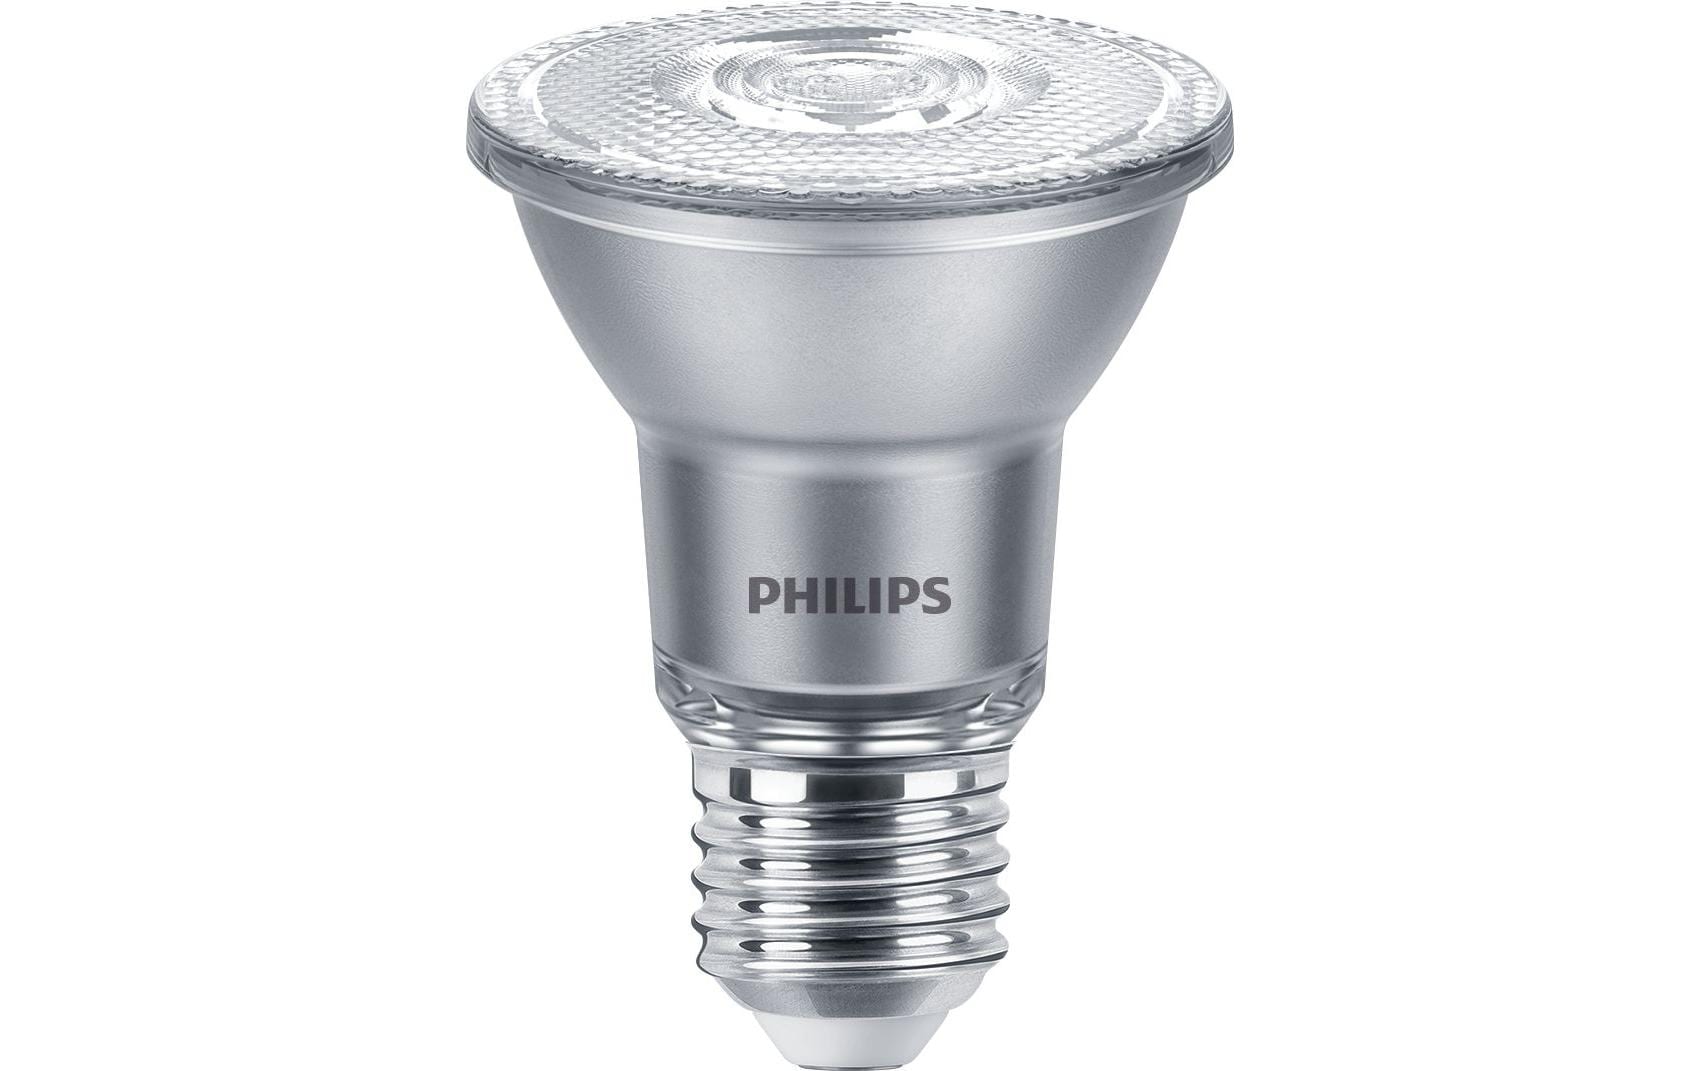 Philips Professional Lampe MAS LEDspot VLE D 6-50W 927 PAR20 40D